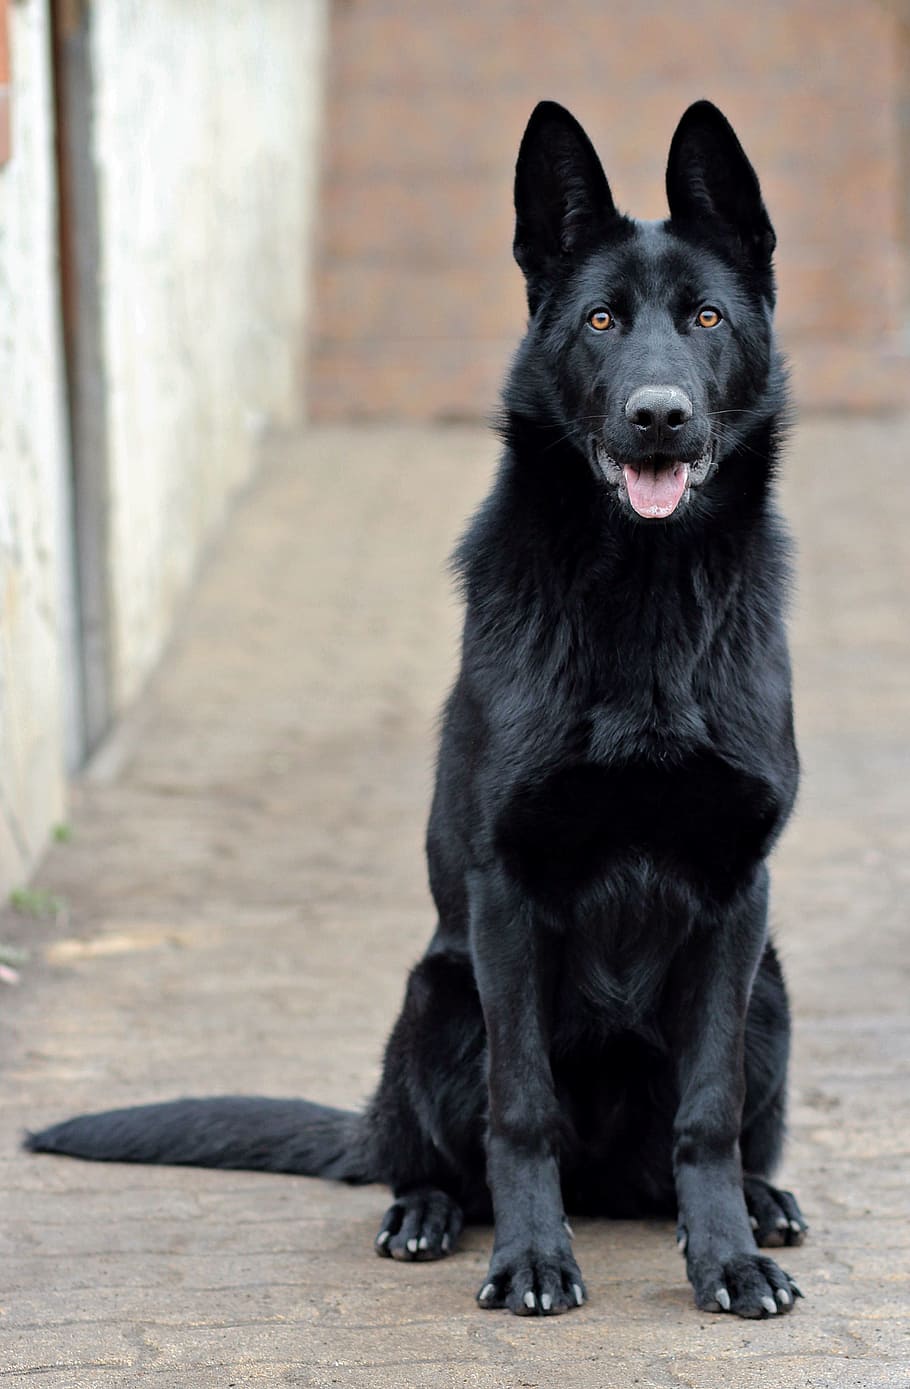 sólido, negro, perro pastor alemán, sentado, pavimento, pastor alemán negro, perro, retrato, belleza, un animal